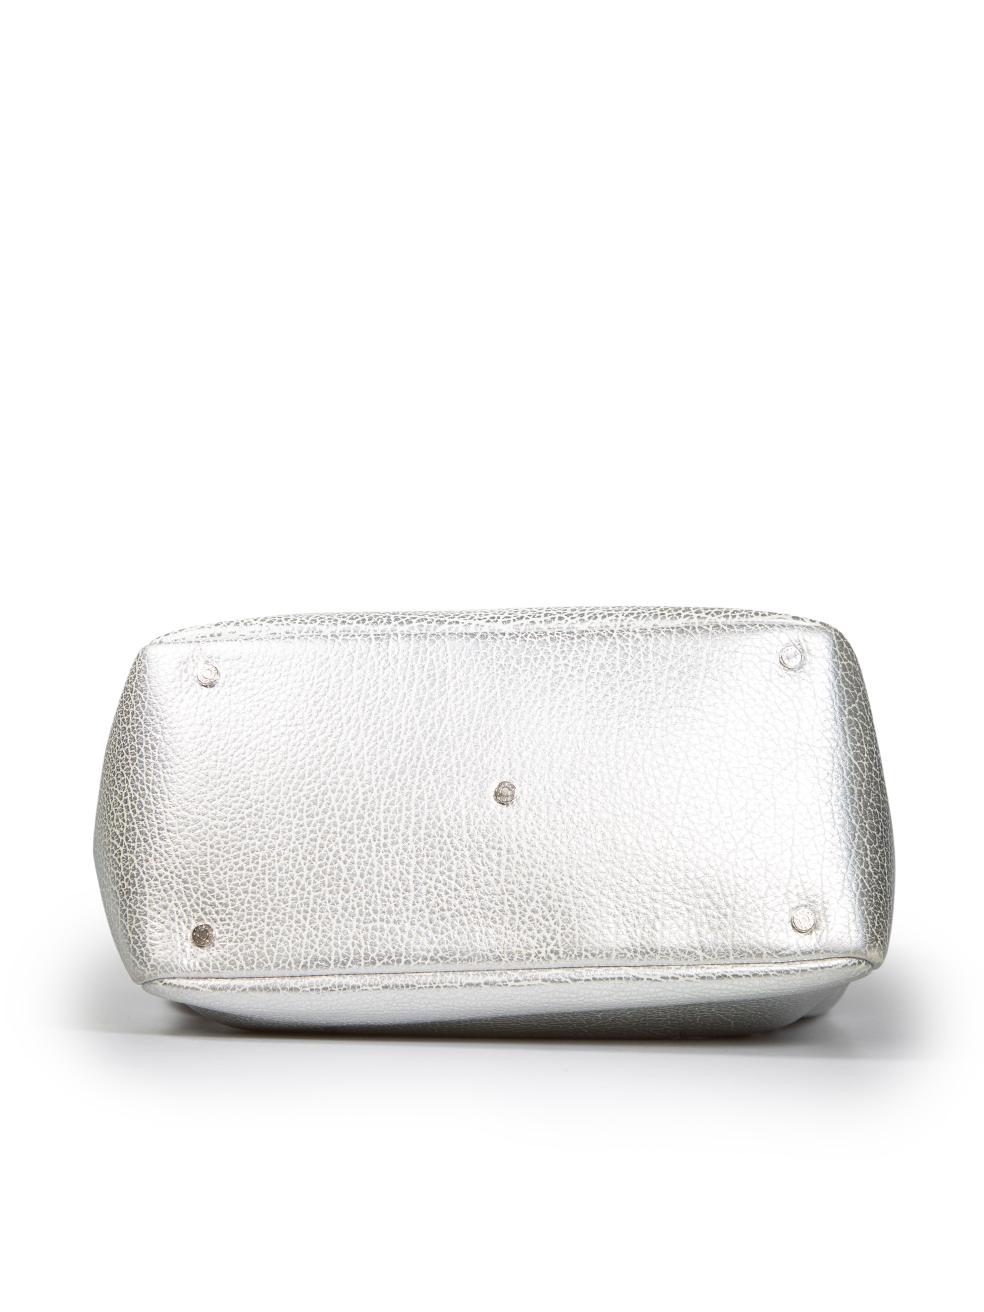 Tiffany & Co. Silver Leather Tote Bag Damen